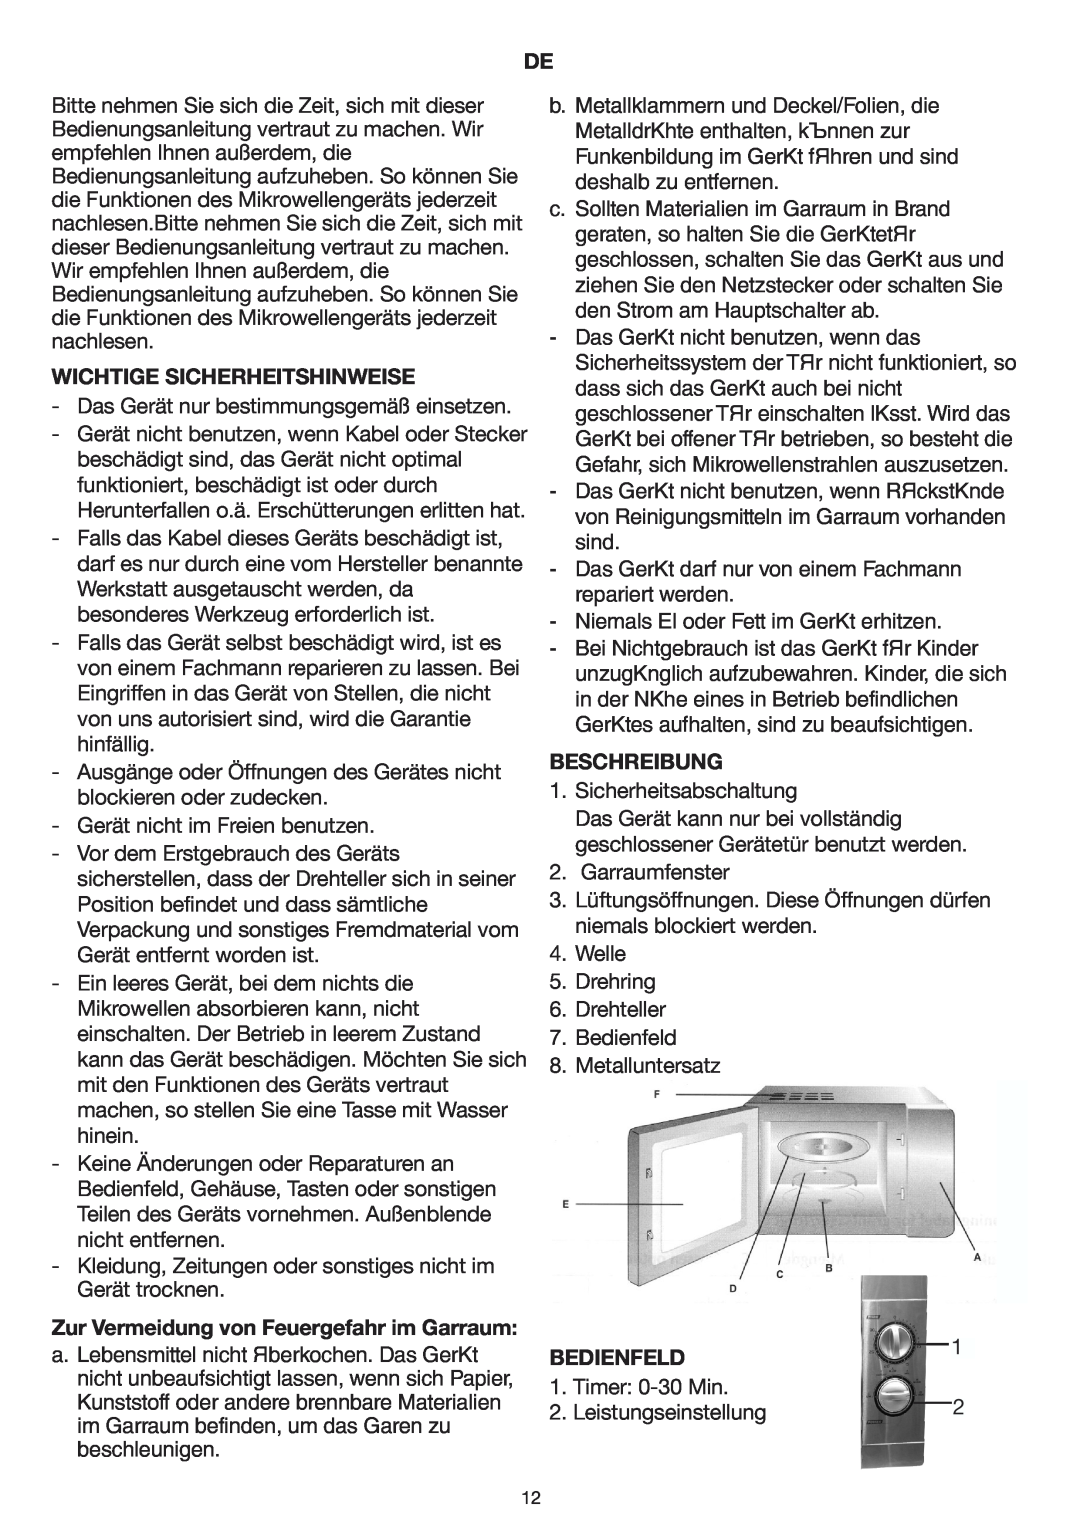 Melissa 253-002 manual Wichtige Sicherheitshinweise, Zur Vermeidung von Feuergefahr im Garraum, Beschreibung, Bedienfeld 